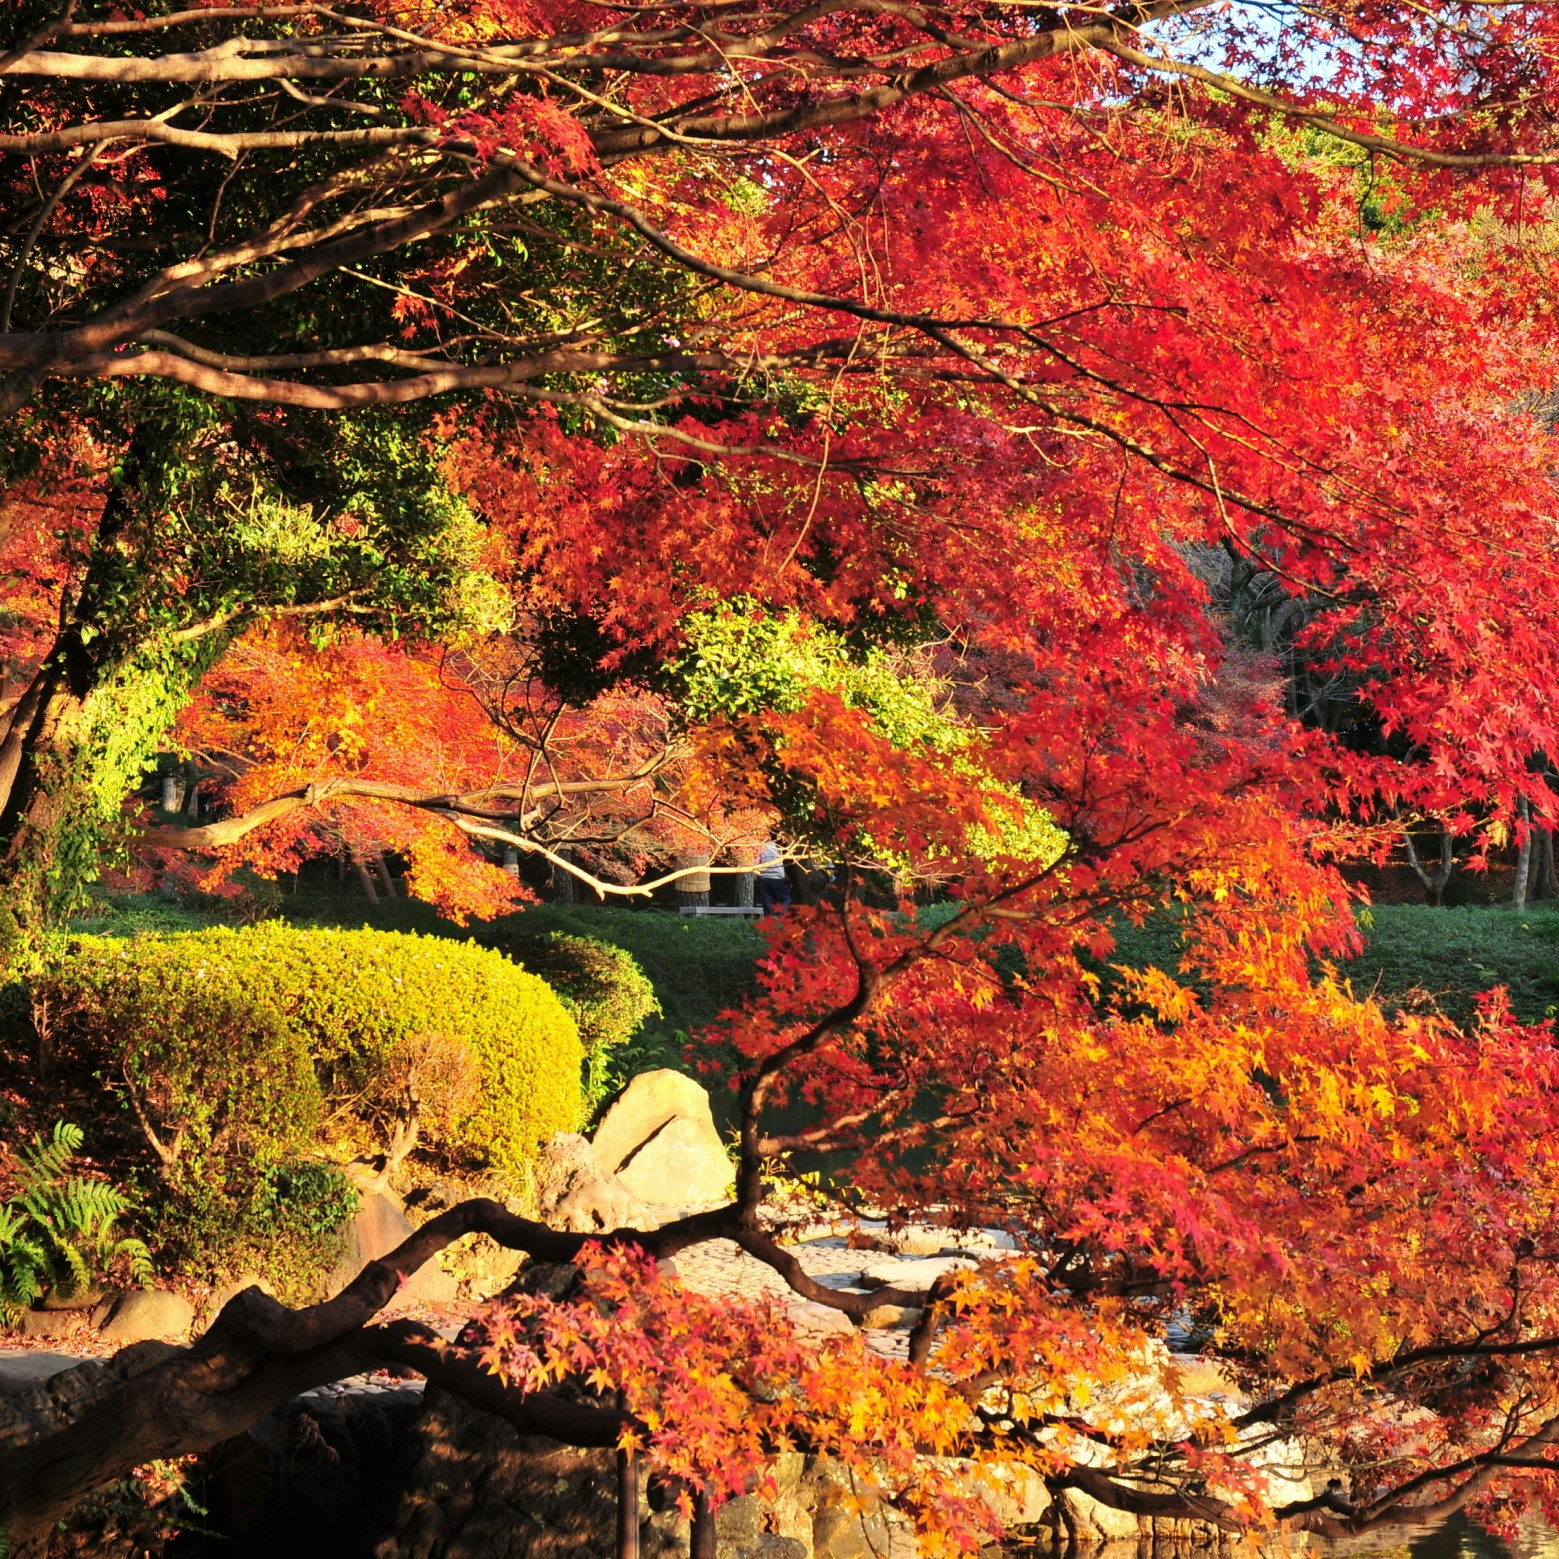 Japanese Autumn colors